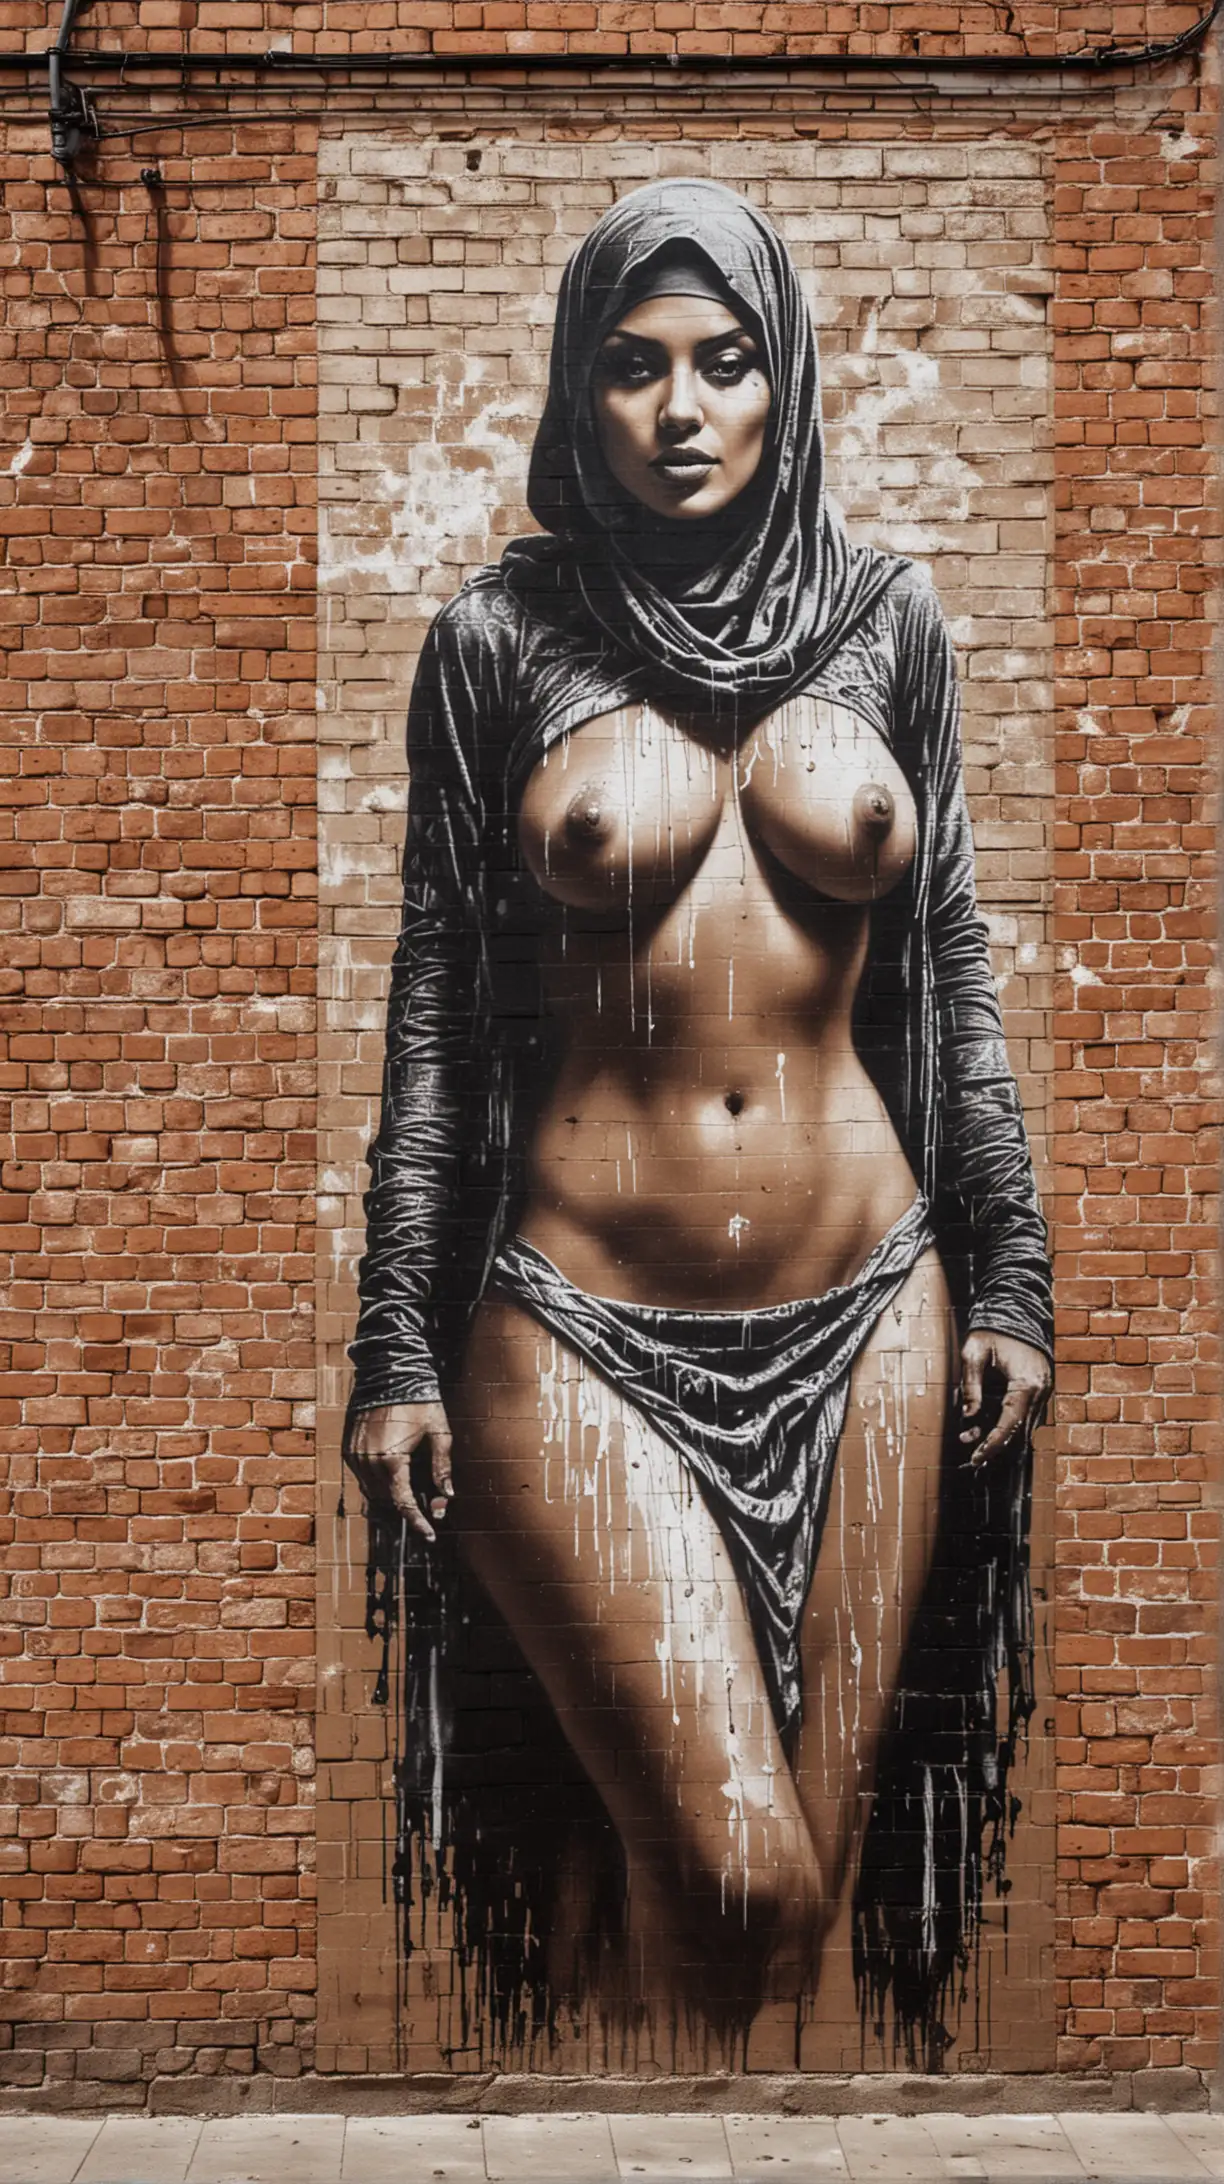 Art du graffiti sur un grand mur de briques marron, pin-up nue portant une burqa, peinture au pochoir noire, craie blanche, coulures, minimaliste, haute résolution, street art, urbain, provocateur, éclairage contrasté, tons monochromatiques, bruts et granuleux, textures détaillées